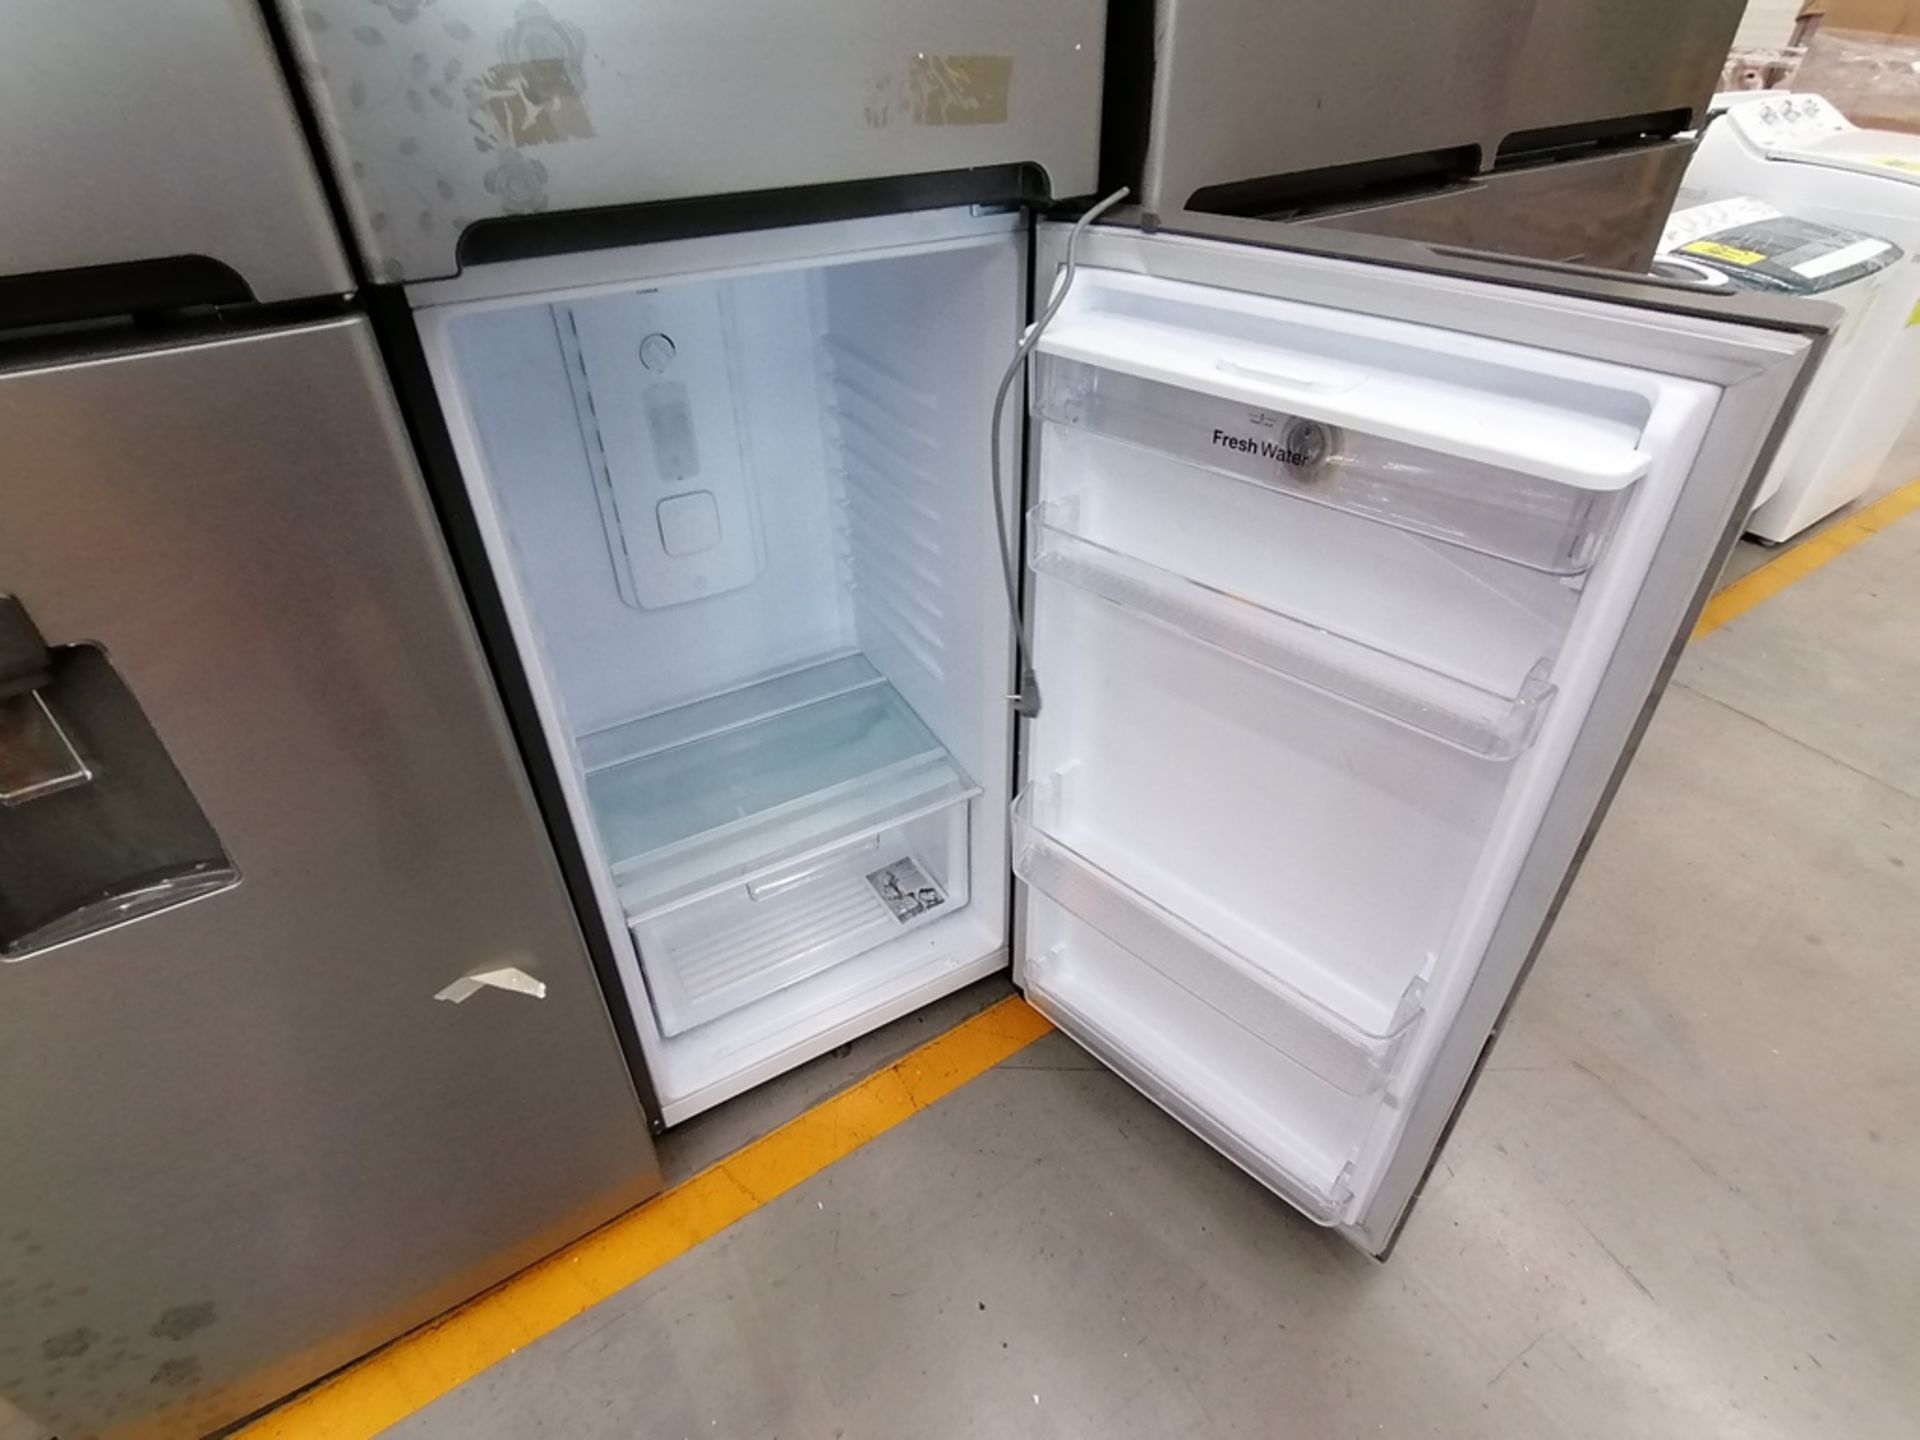 Lote de 2 Refrigeradores, Incluye: 1 Refrigerador con dispensador de agua, Marca Winia, Modelo DFR4 - Image 13 of 16